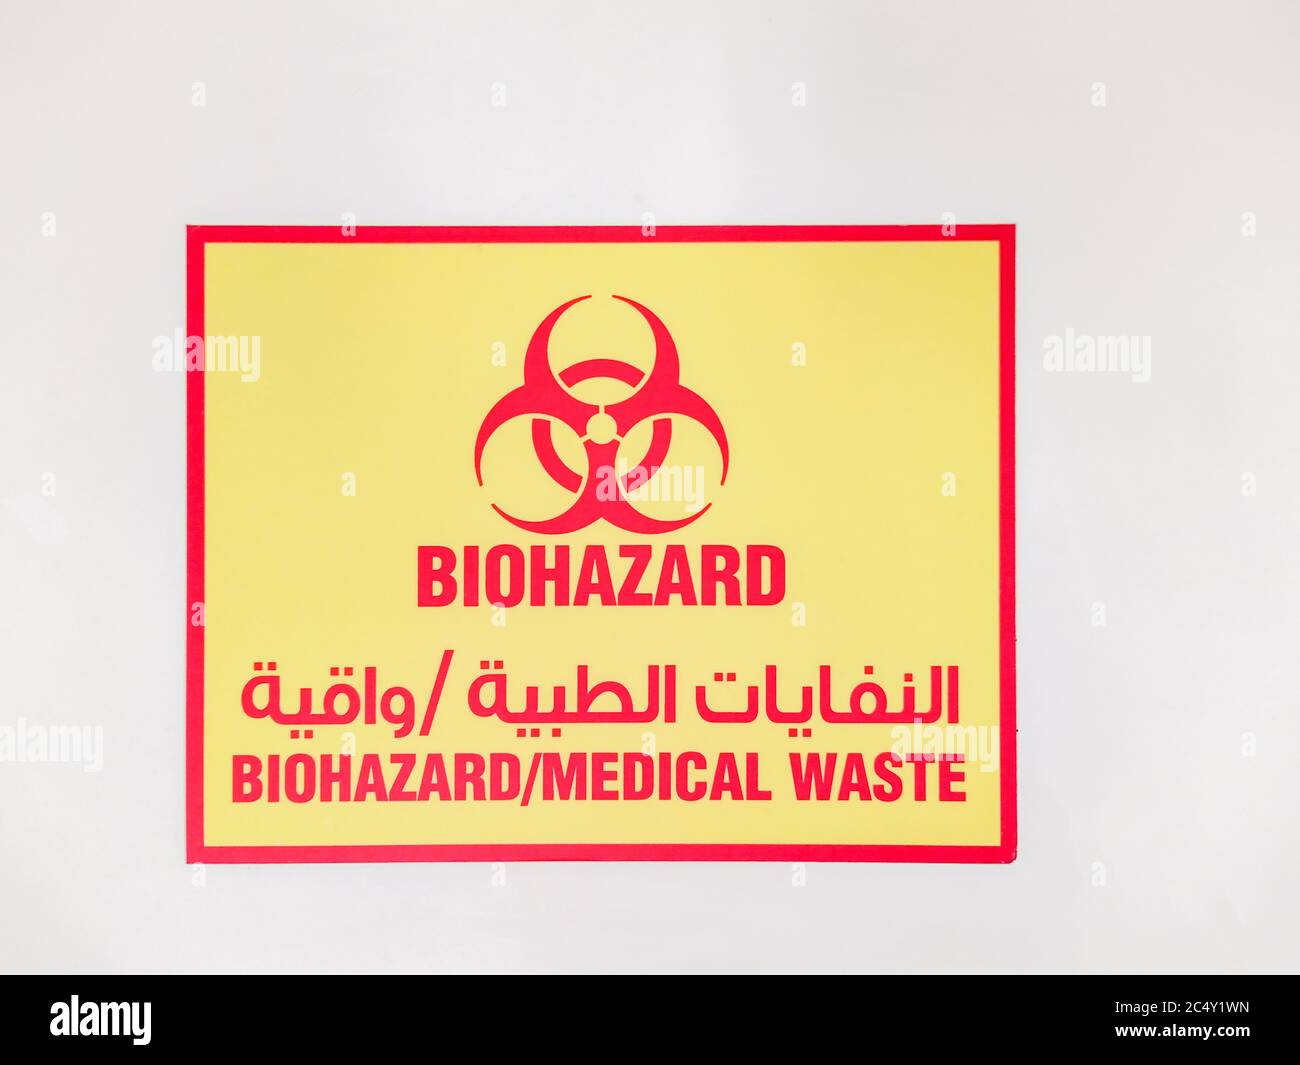 Schild für Biohazard Medical Waste. Arabisch schreiben kann Biohazard medizinischen Abfall lesen. Konzept der Biohazard im Nahen Osten und arabischsprachigen Ländern Stockfoto